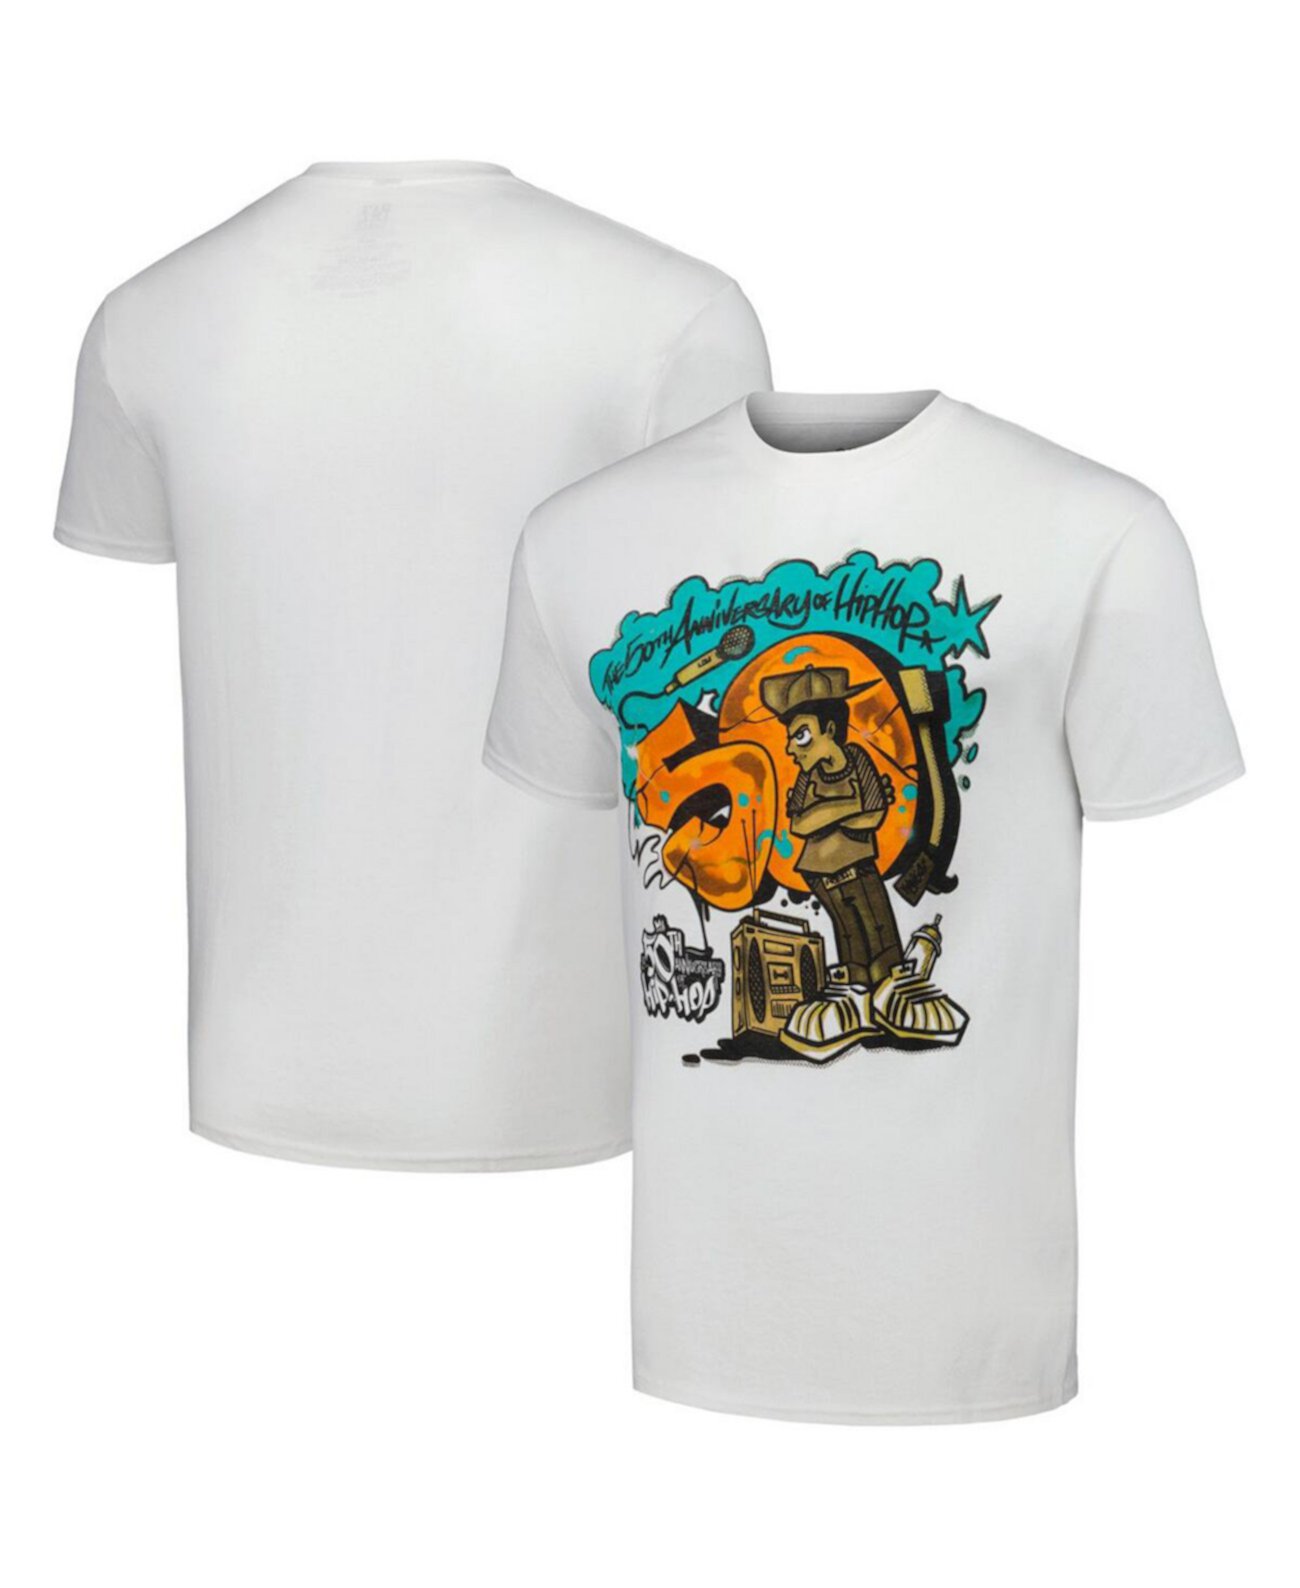 Мужская белая футболка с рисунком "50-летие хип-хопа" Philcos